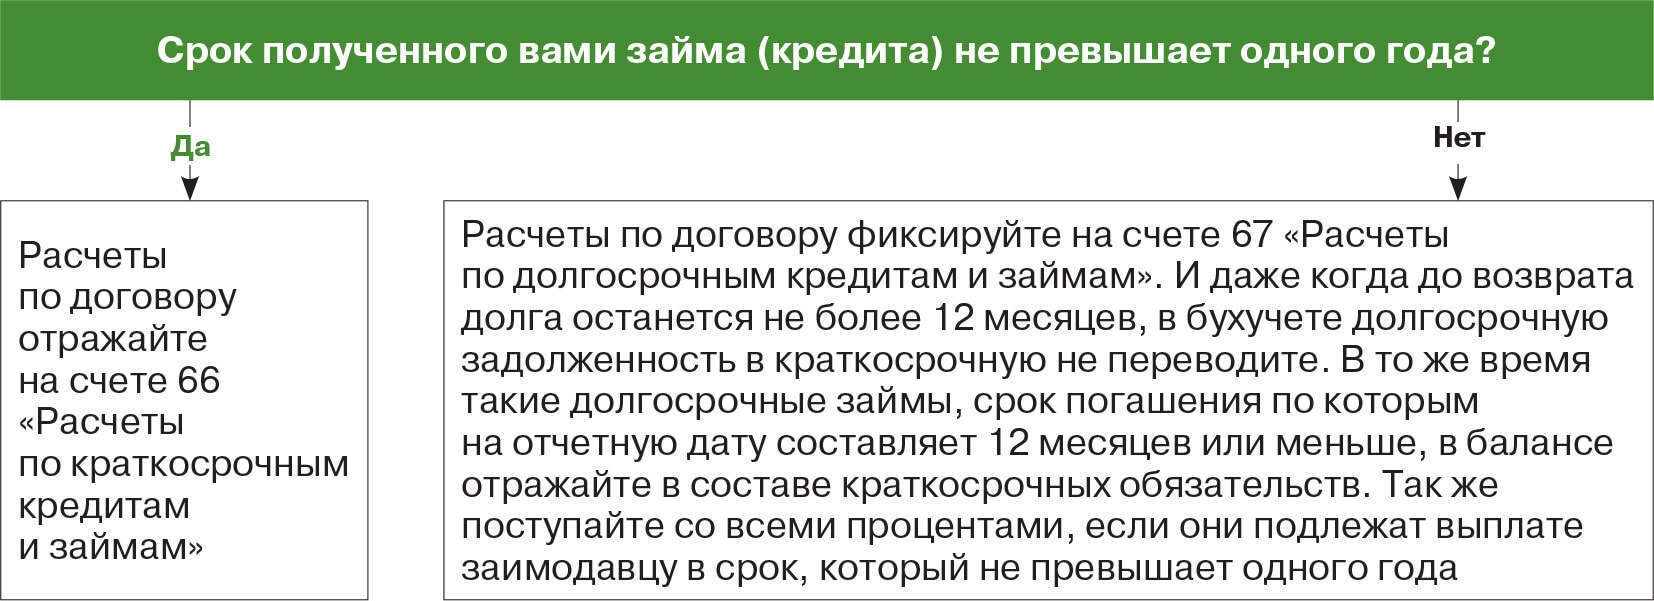 райфайзенбанкаваль официальный сайт москва личный кабинет